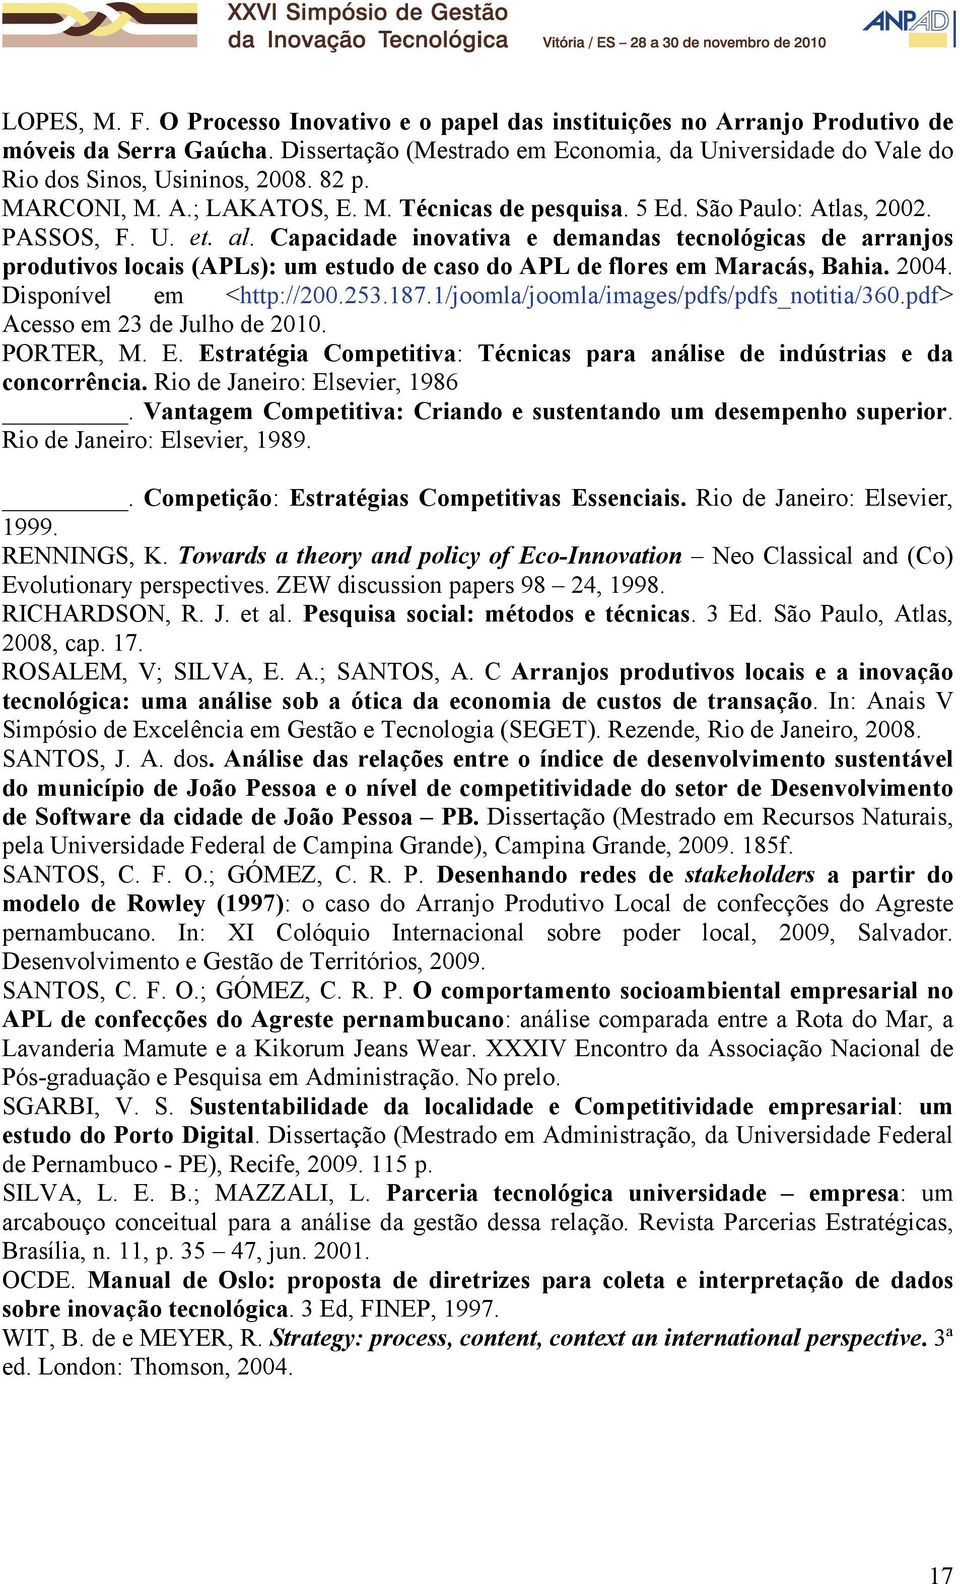 al. Capacidade inovativa e demandas tecnológicas de arranjos produtivos locais (APLs): um estudo de caso do APL de flores em Maracás, Bahia. 2004. Disponível em <http://200.253.187.